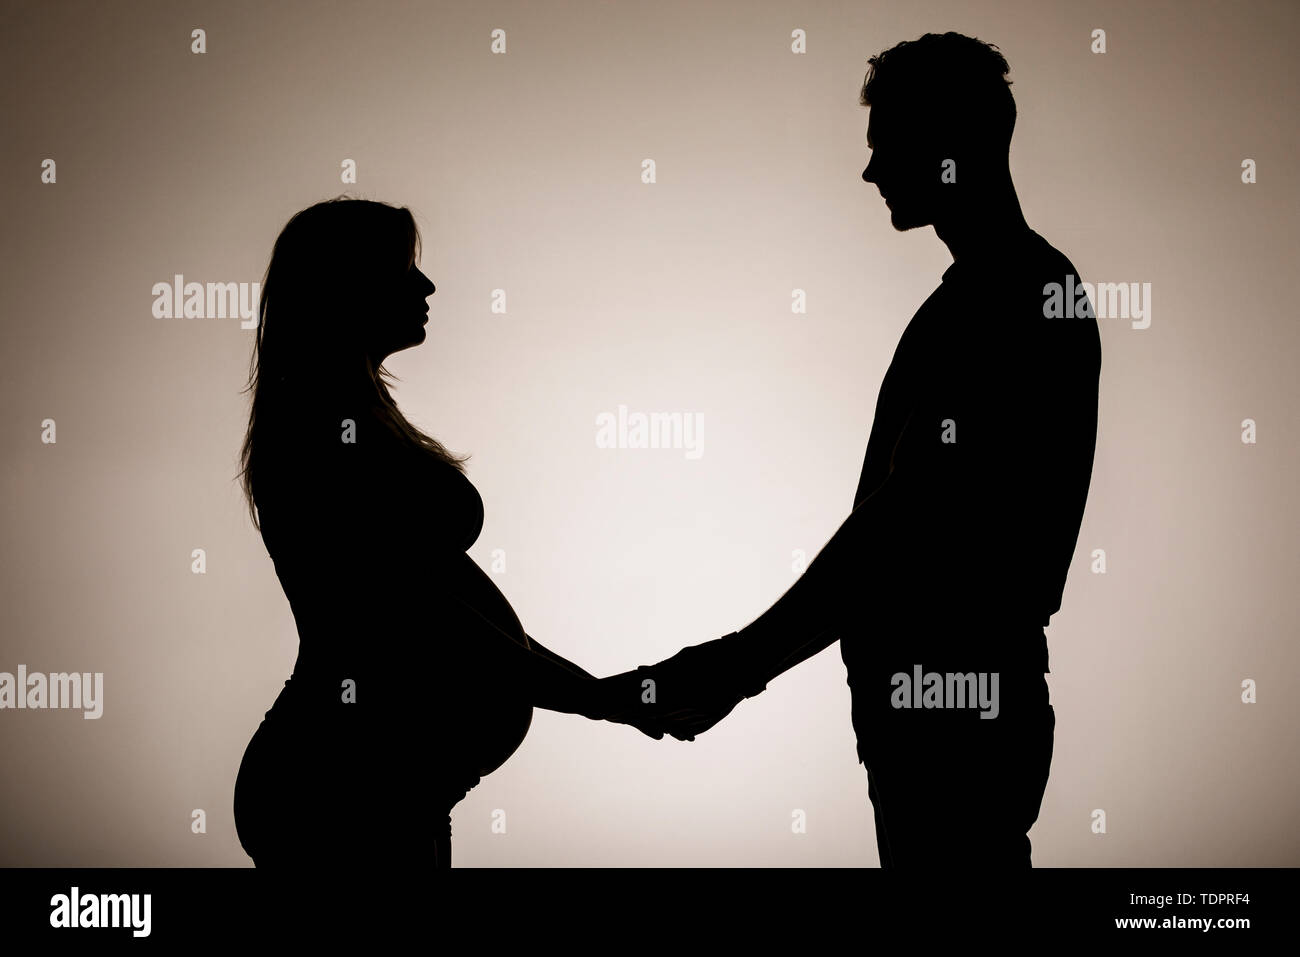 Una silhouette in uno studio di un giovane che stanno avendo un bambino e tenendo le mani mentre la madre è ben lungo nel suo stato di gravidanza Foto Stock